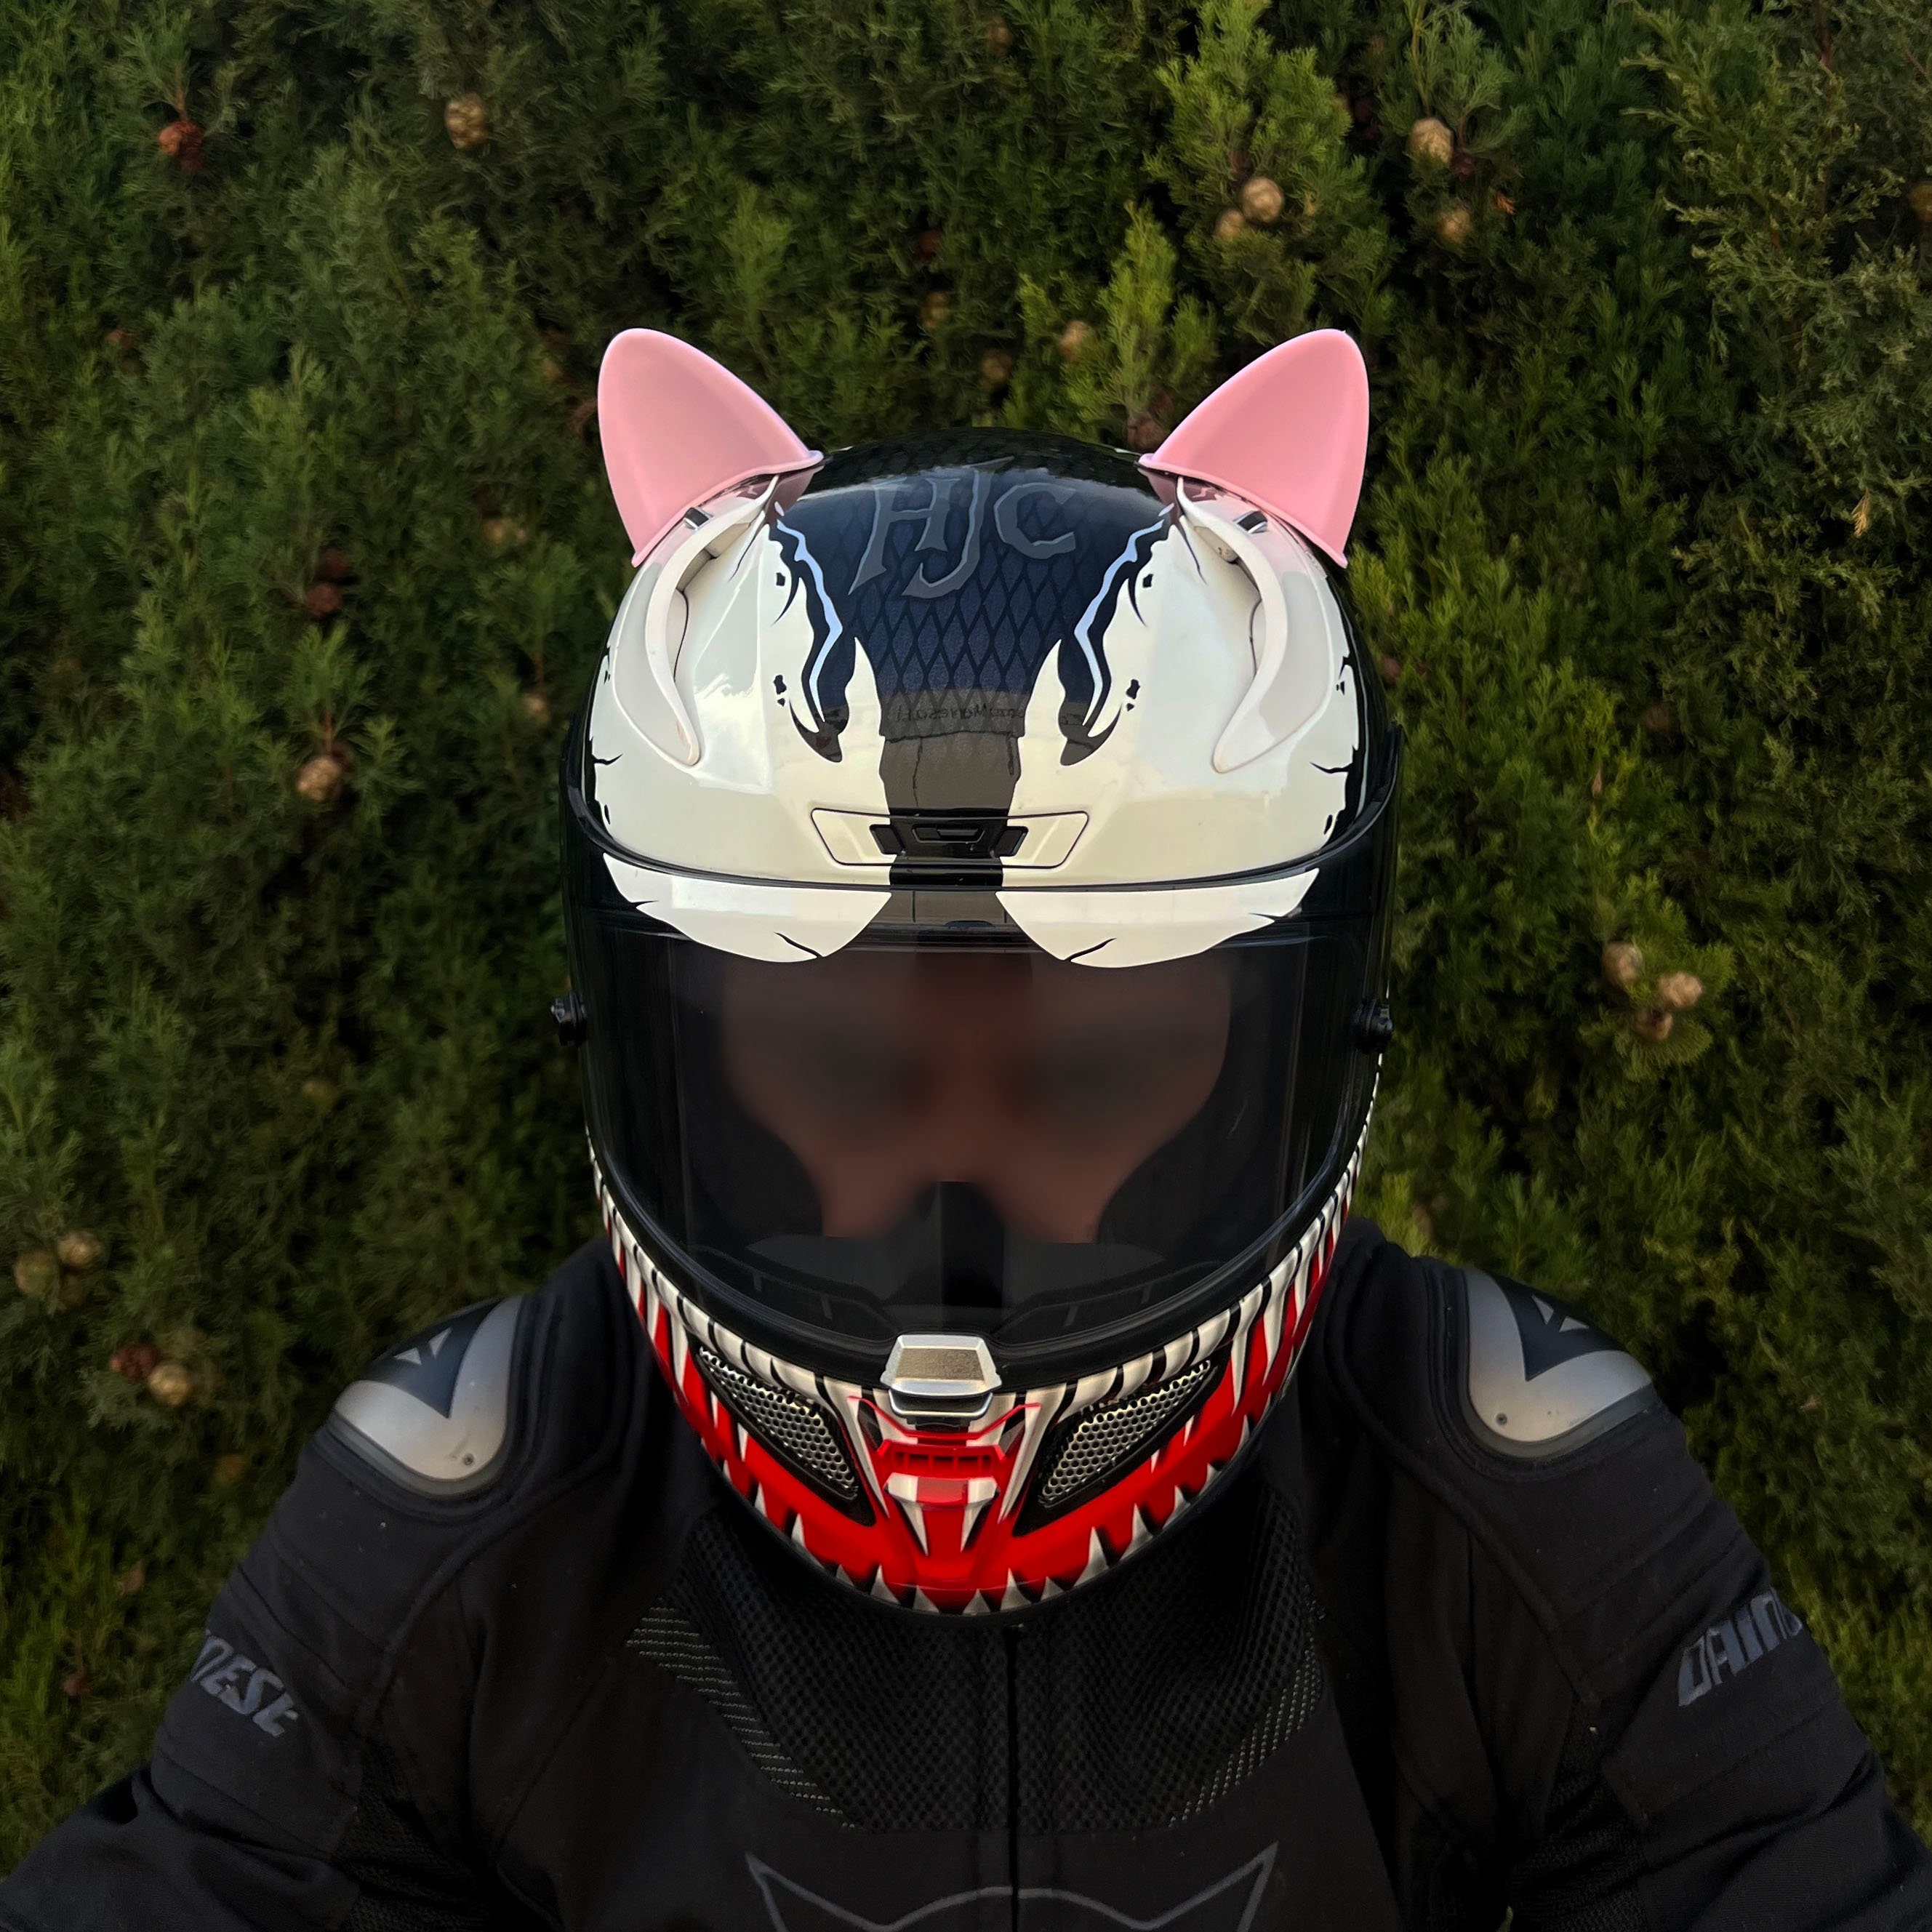 Llevar unas orejas de conejo o un Pikachu en el casco de la moto